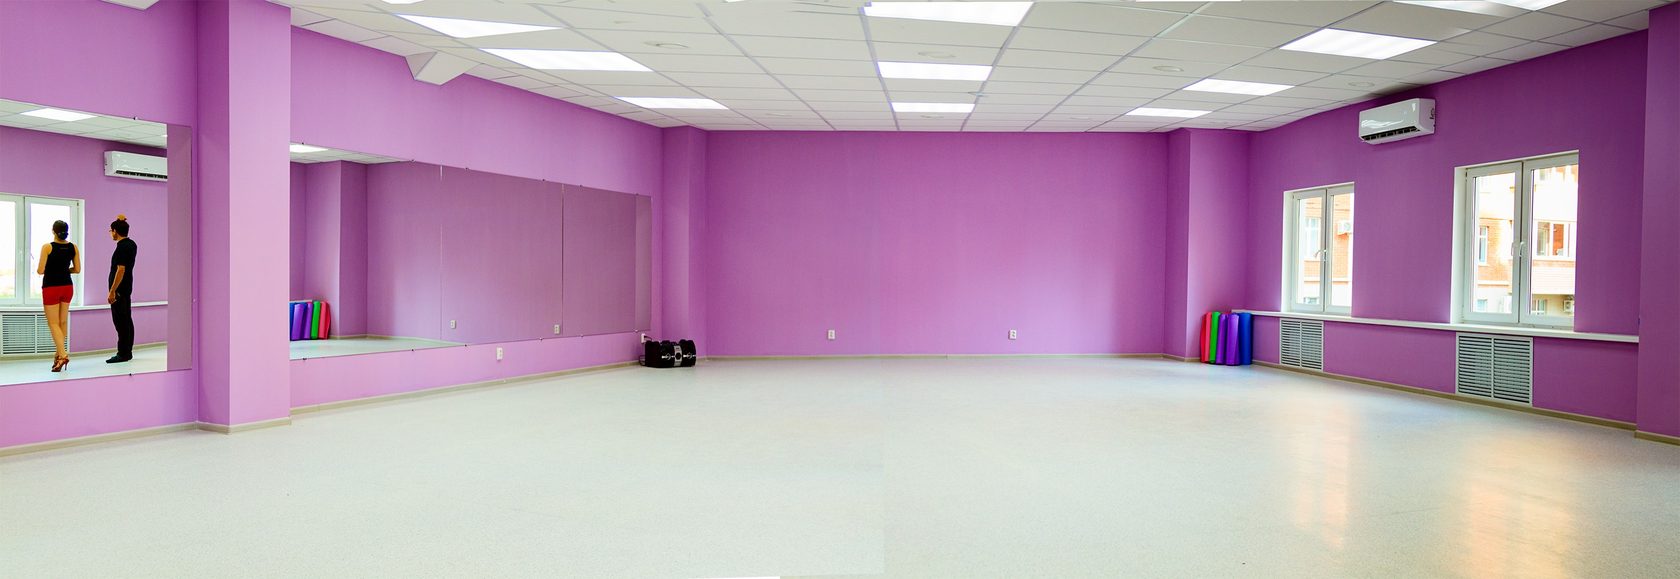 В квадратном зале для танцев. Розовый танцевальный зал. Хореографический зал цвет стен. Интерьер танцевального зала в розовом цвете. Оформление танцевальной студии.